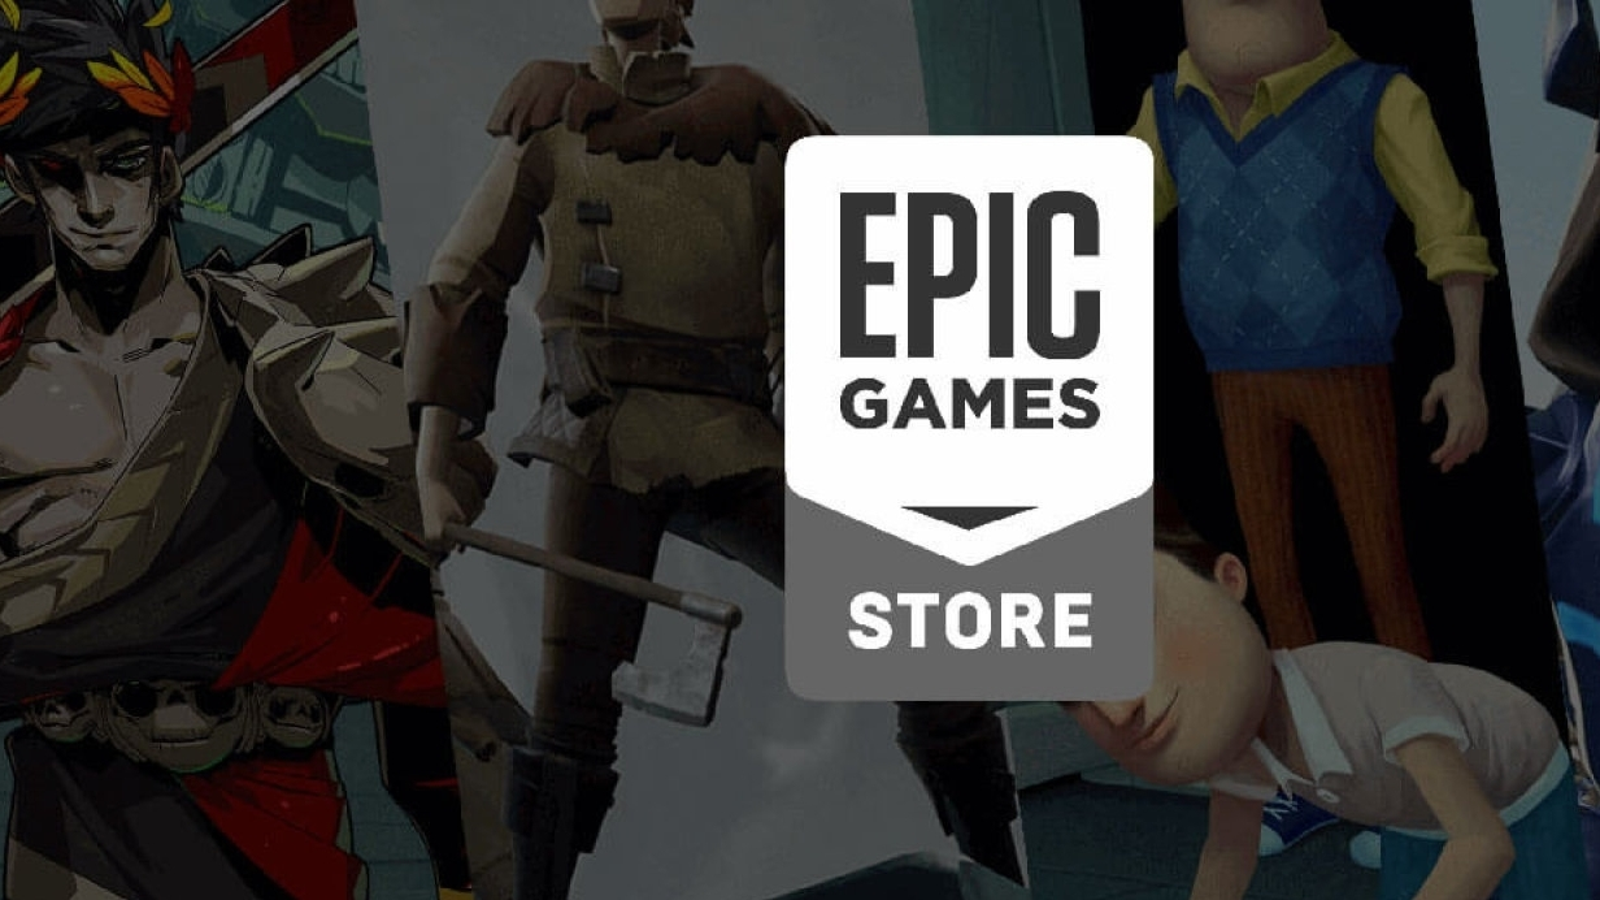 Epic Games > Vendo Conta Epic Games, Alguns Jogos com acesso total!